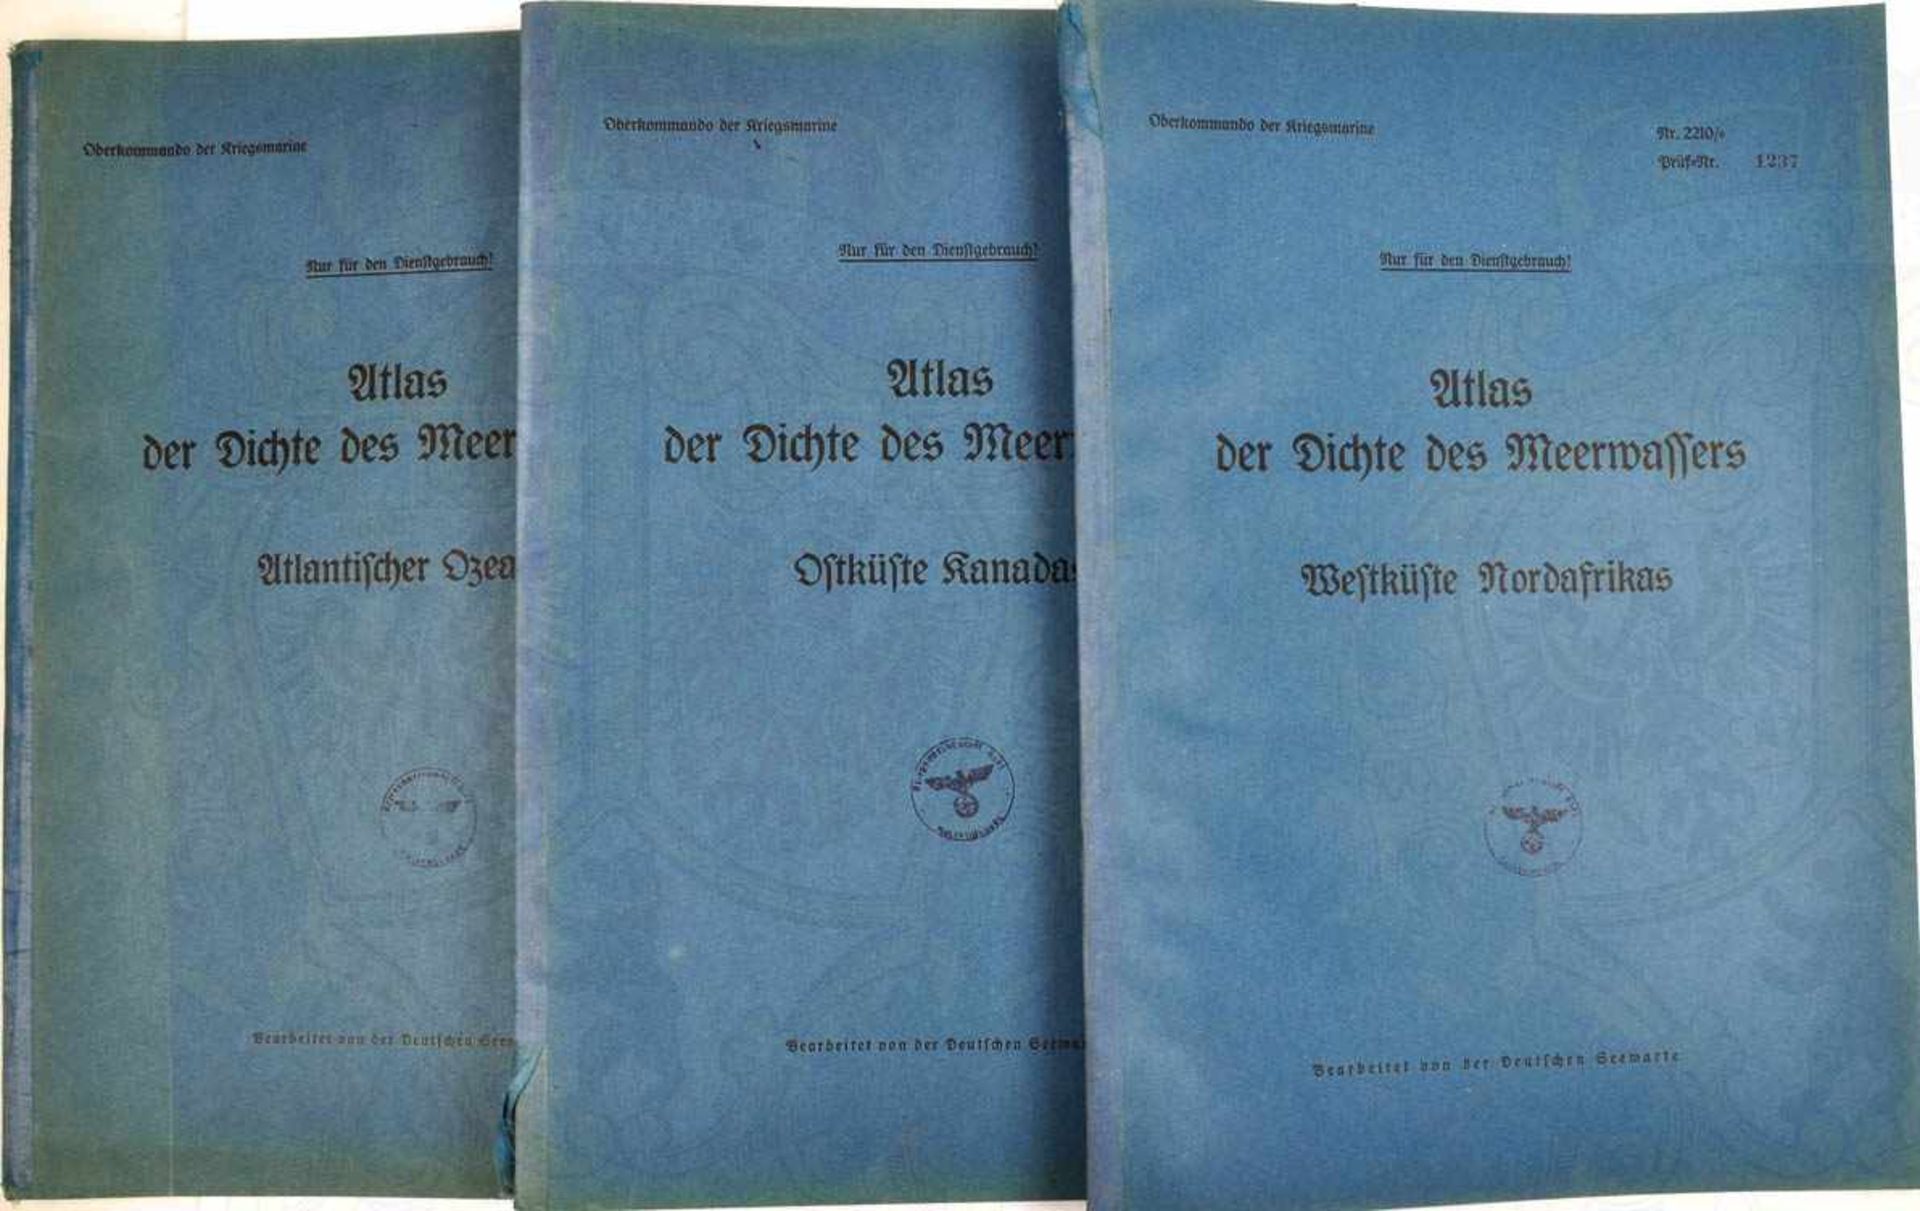 ATLAS DER DICHTE DES MEERWASSERS, 13 Teile, Hrsg.: Ob.Kmdo. der Kriegsmarine, um 1938, dabei: